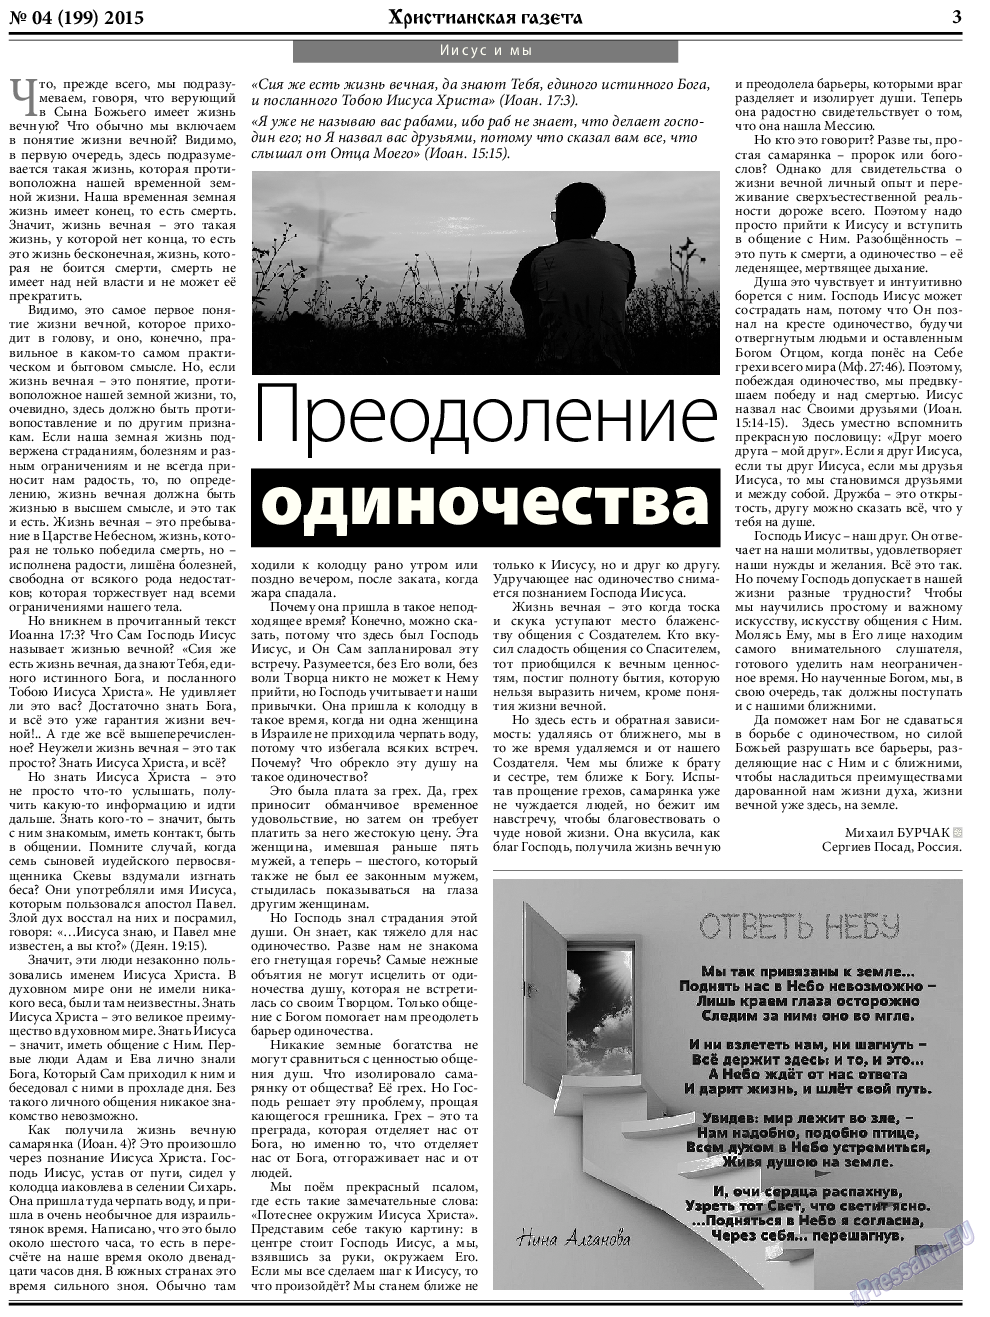 Христианская газета, газета. 2015 №4 стр.3